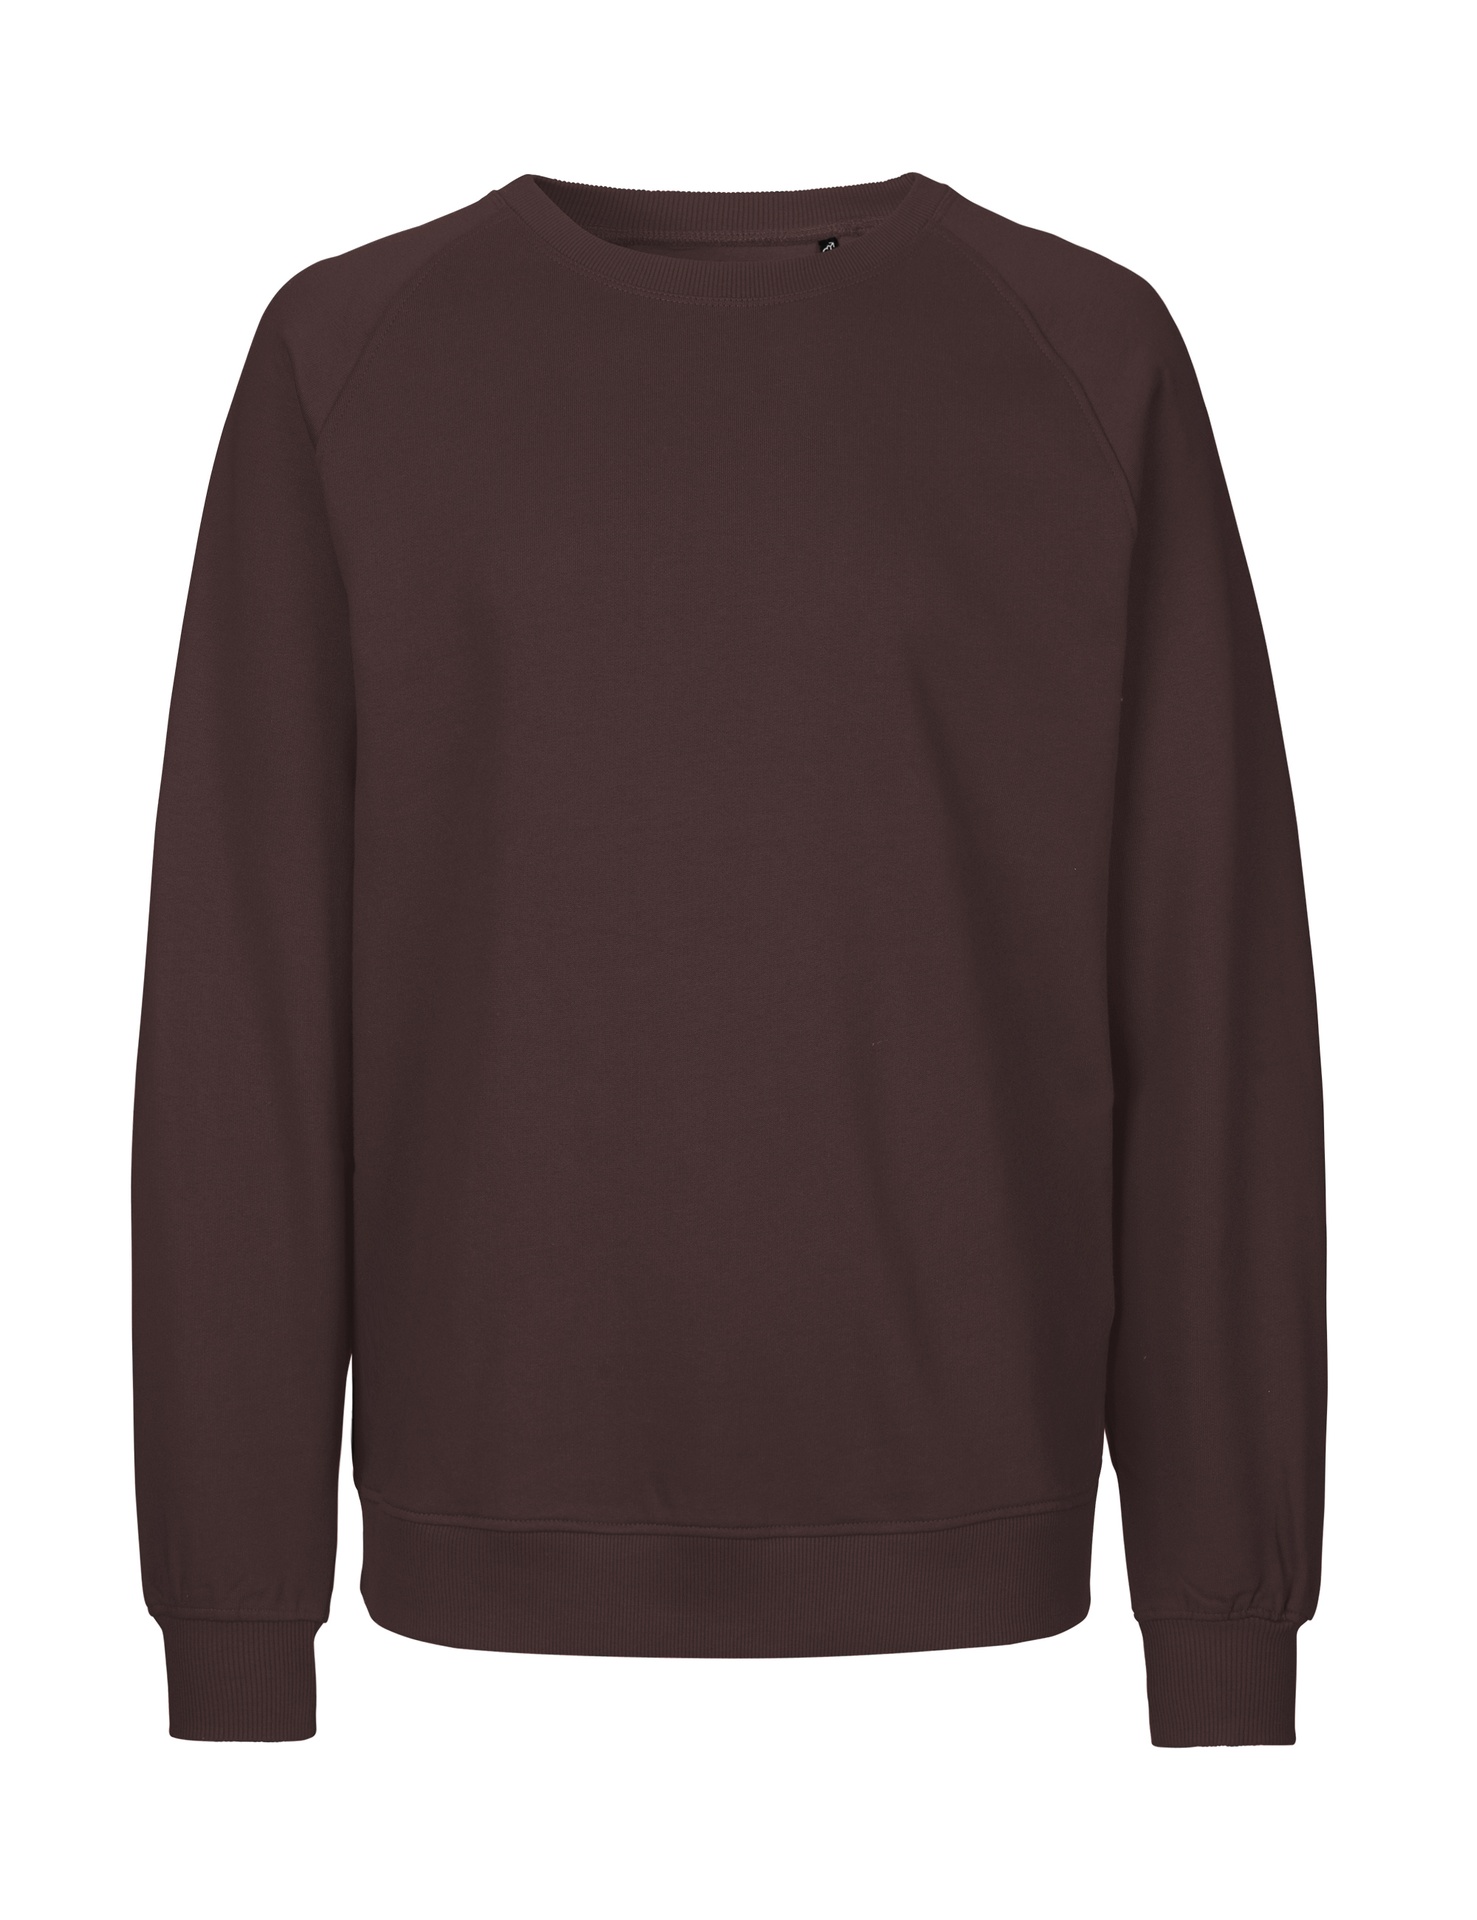 [PR/02809] Unisex Sweatshirt (Brown 37, XL)